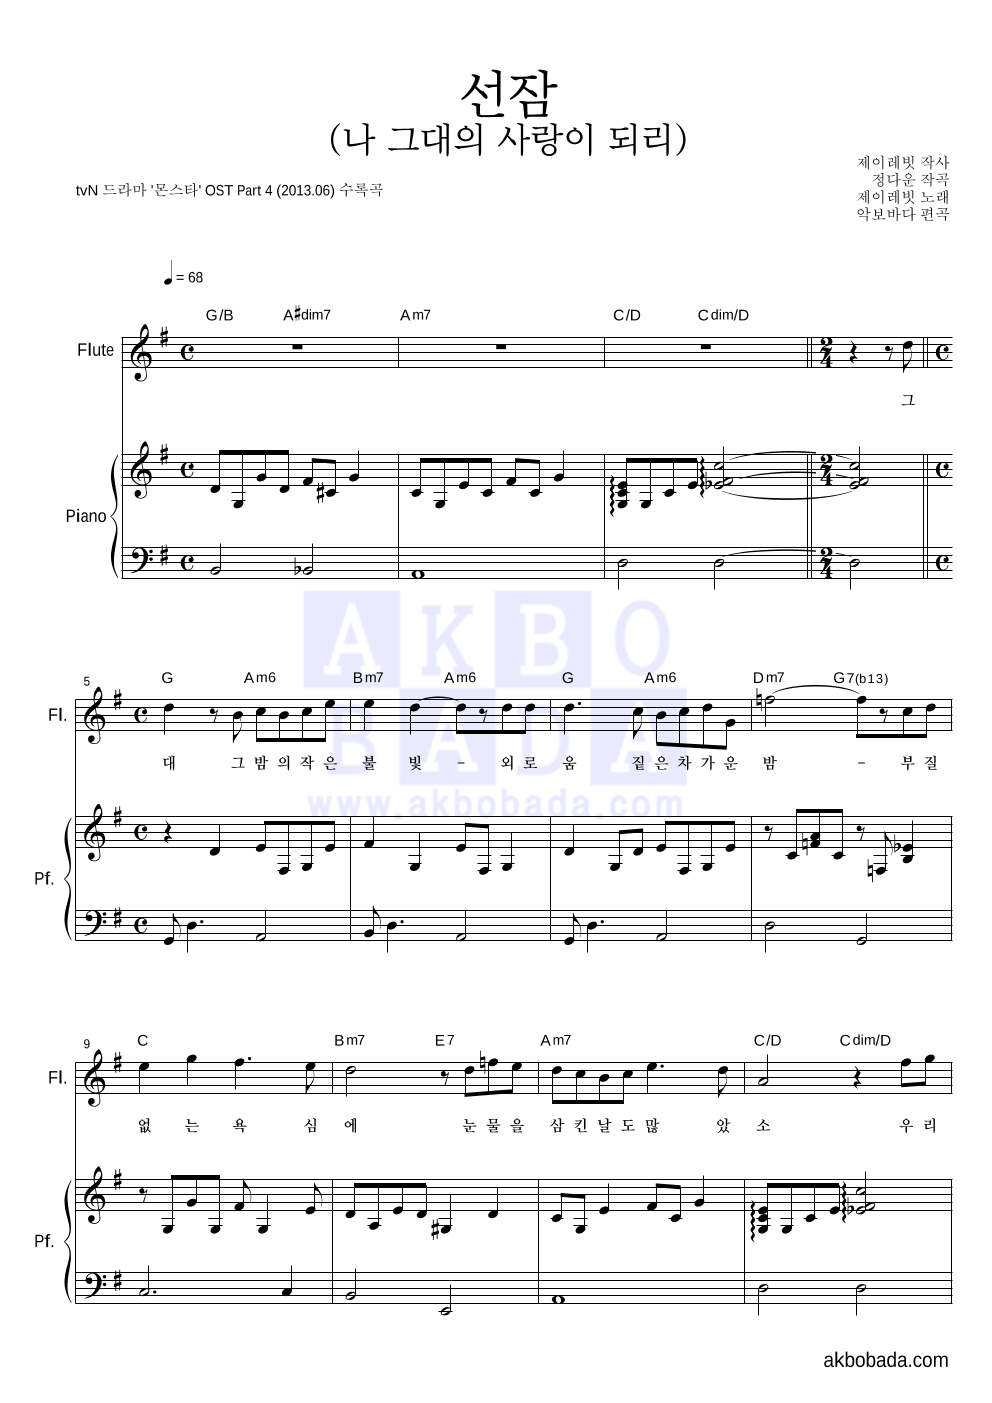 제이레빗 - 선잠 (나 그대의 사랑이 되리) 플룻&피아노 악보 